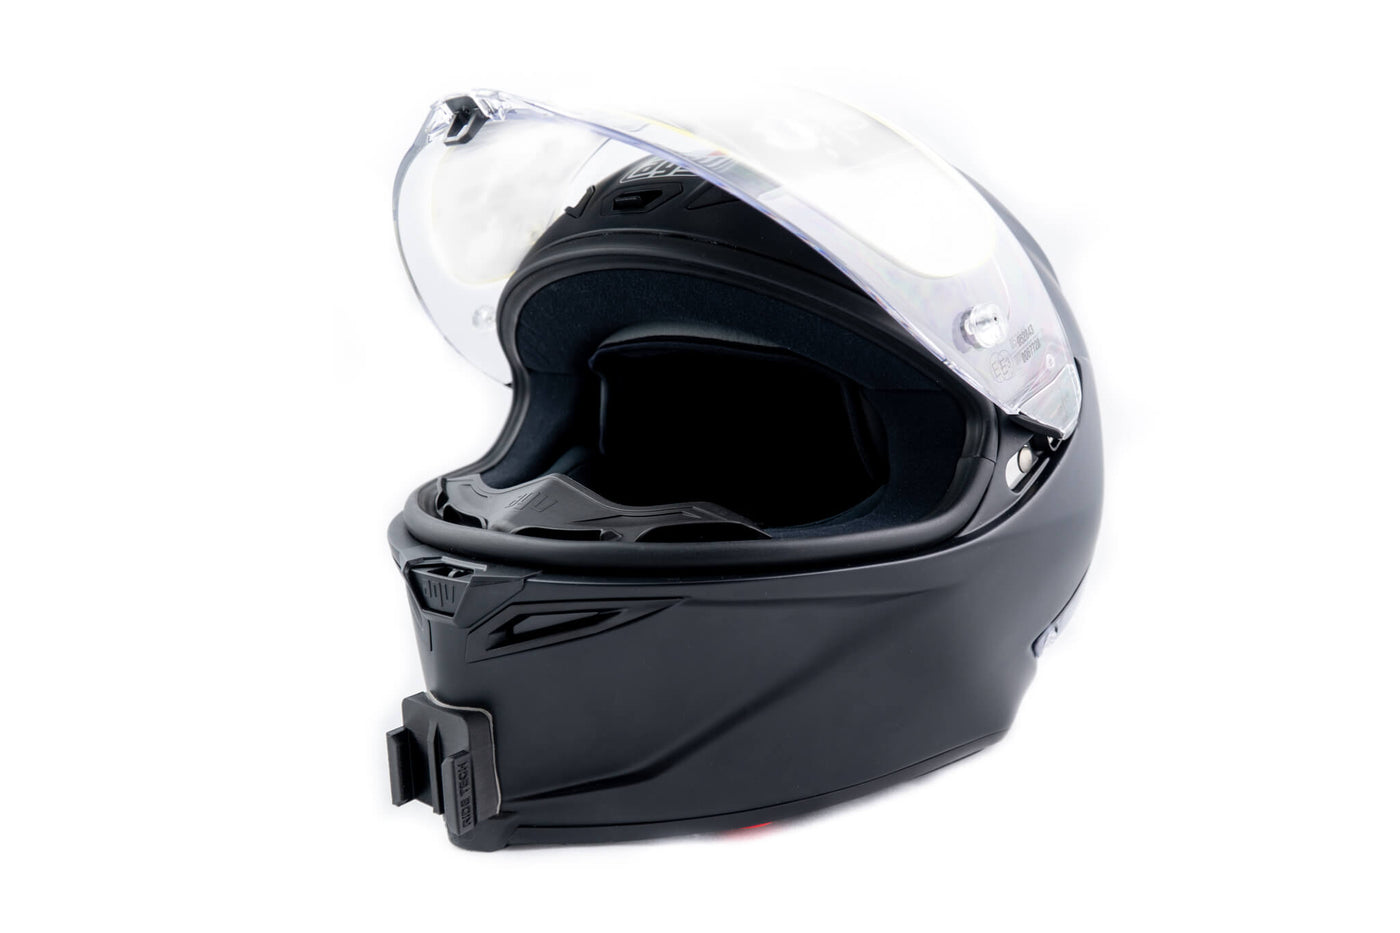 AGV Pista GP-RR Motorcycle Helmet